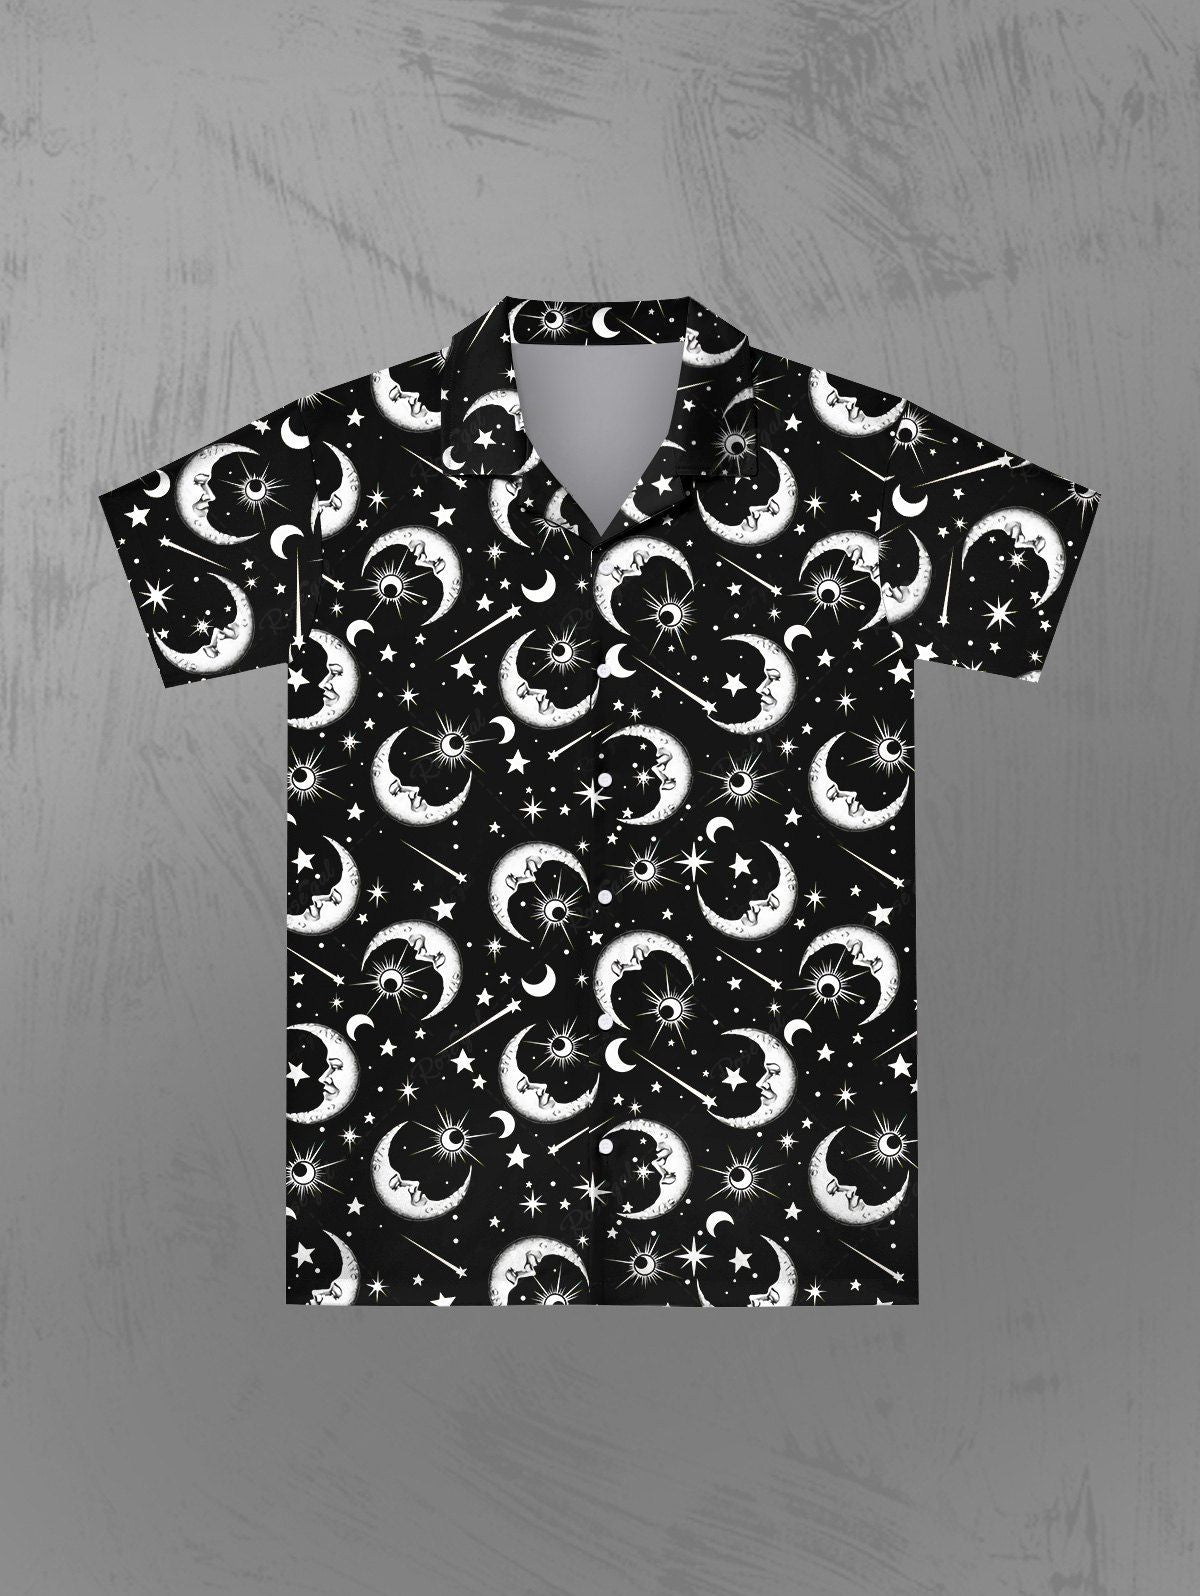 Gothic Galaxy Sun Moon Star Print Button Down Shirt For Men